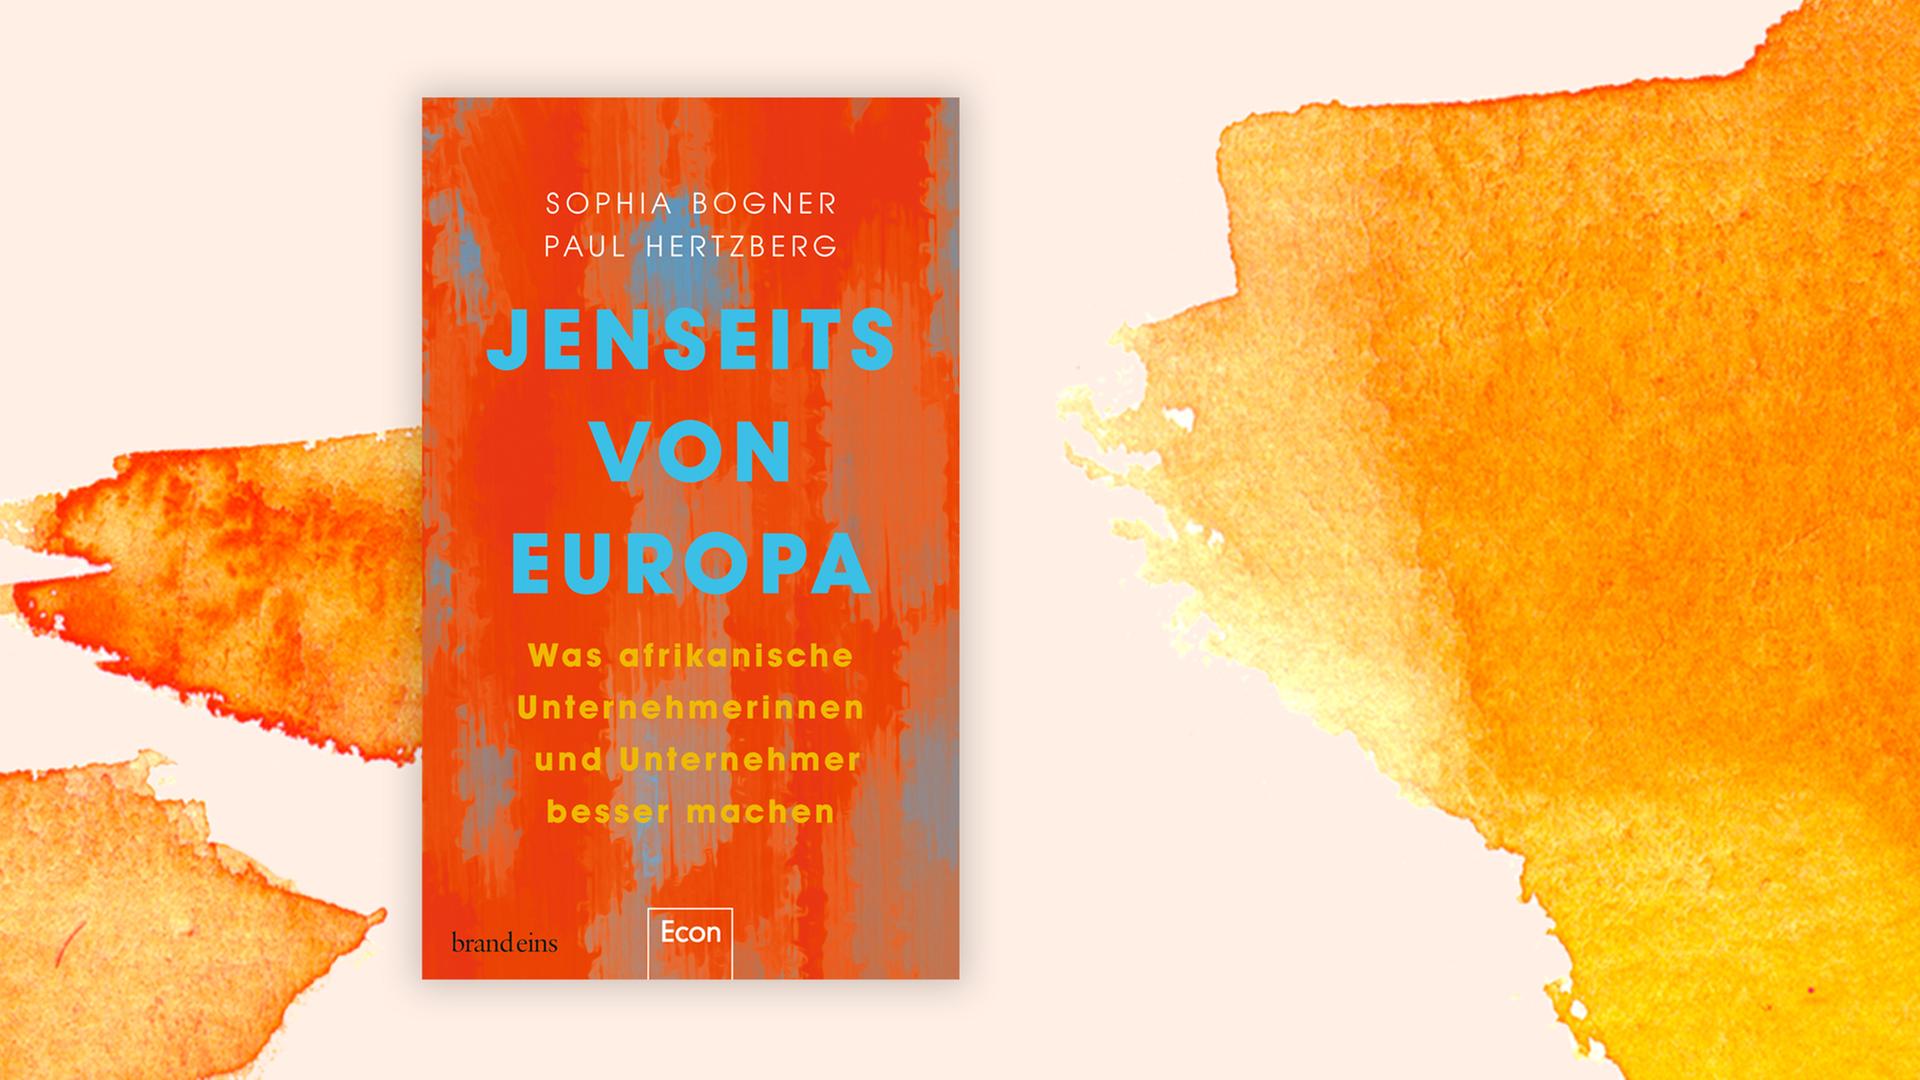 Das orange-rote Cover des Buches "Jenseits von Europa" vor grafischem Hintergrund in gelb-rosa und orange.